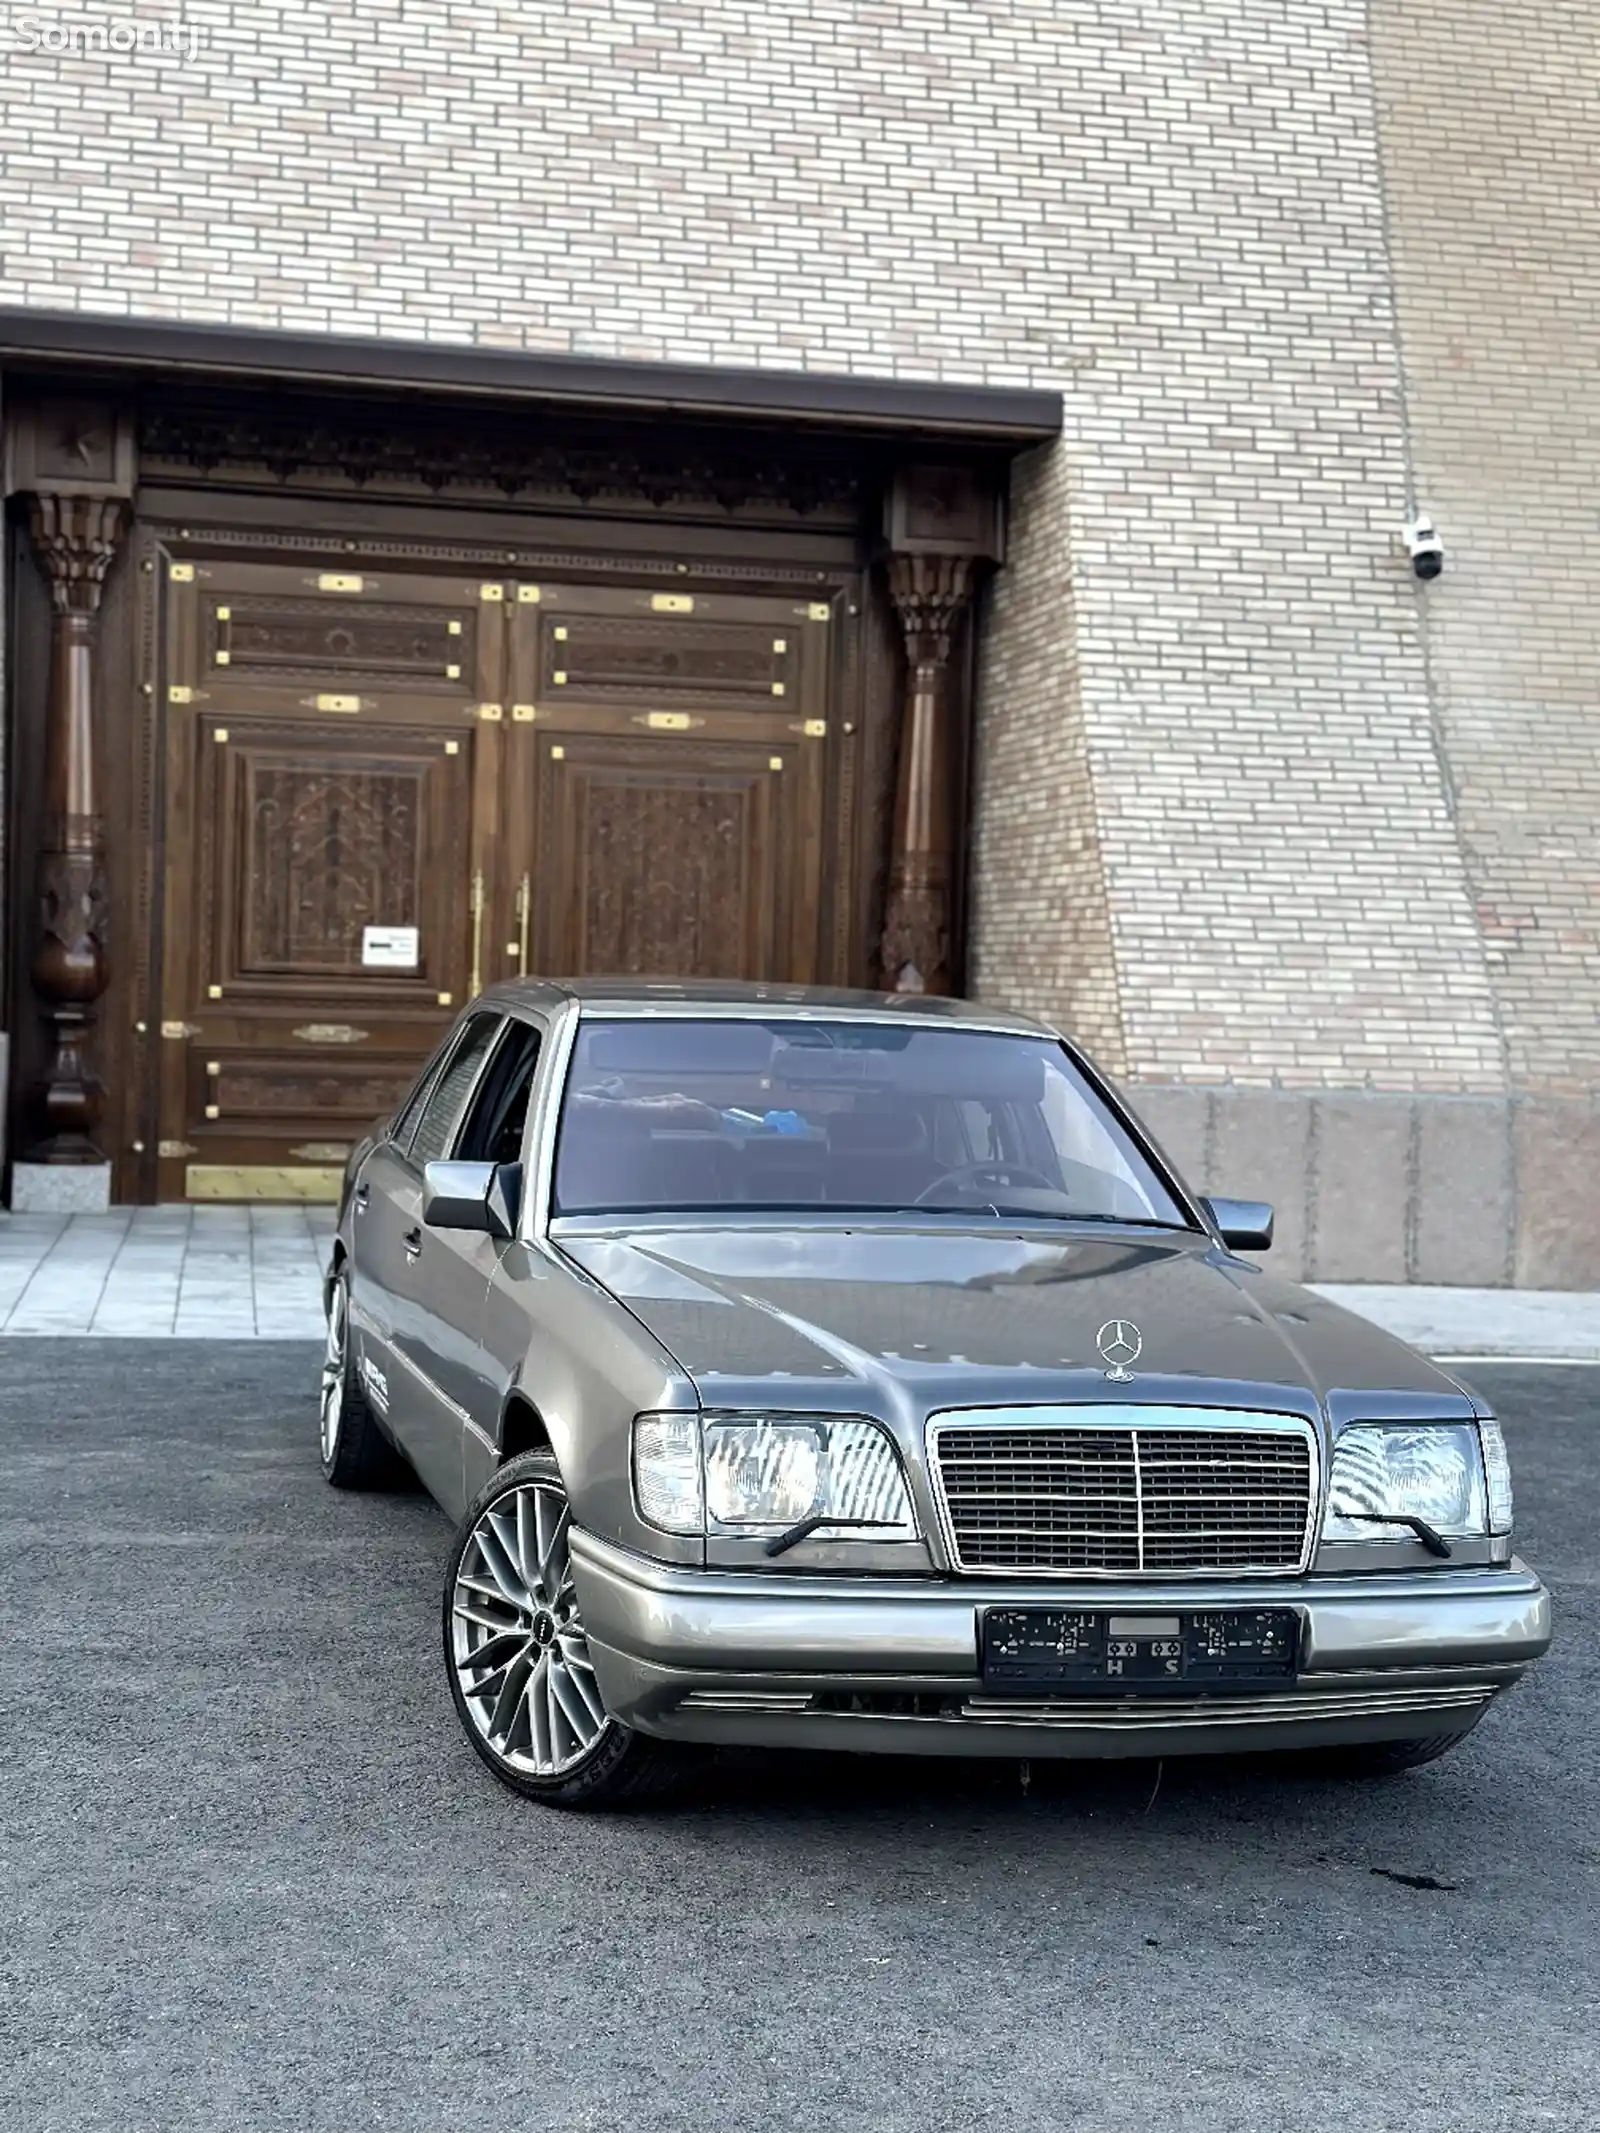 Mercedes-Benz W124, 1993-5